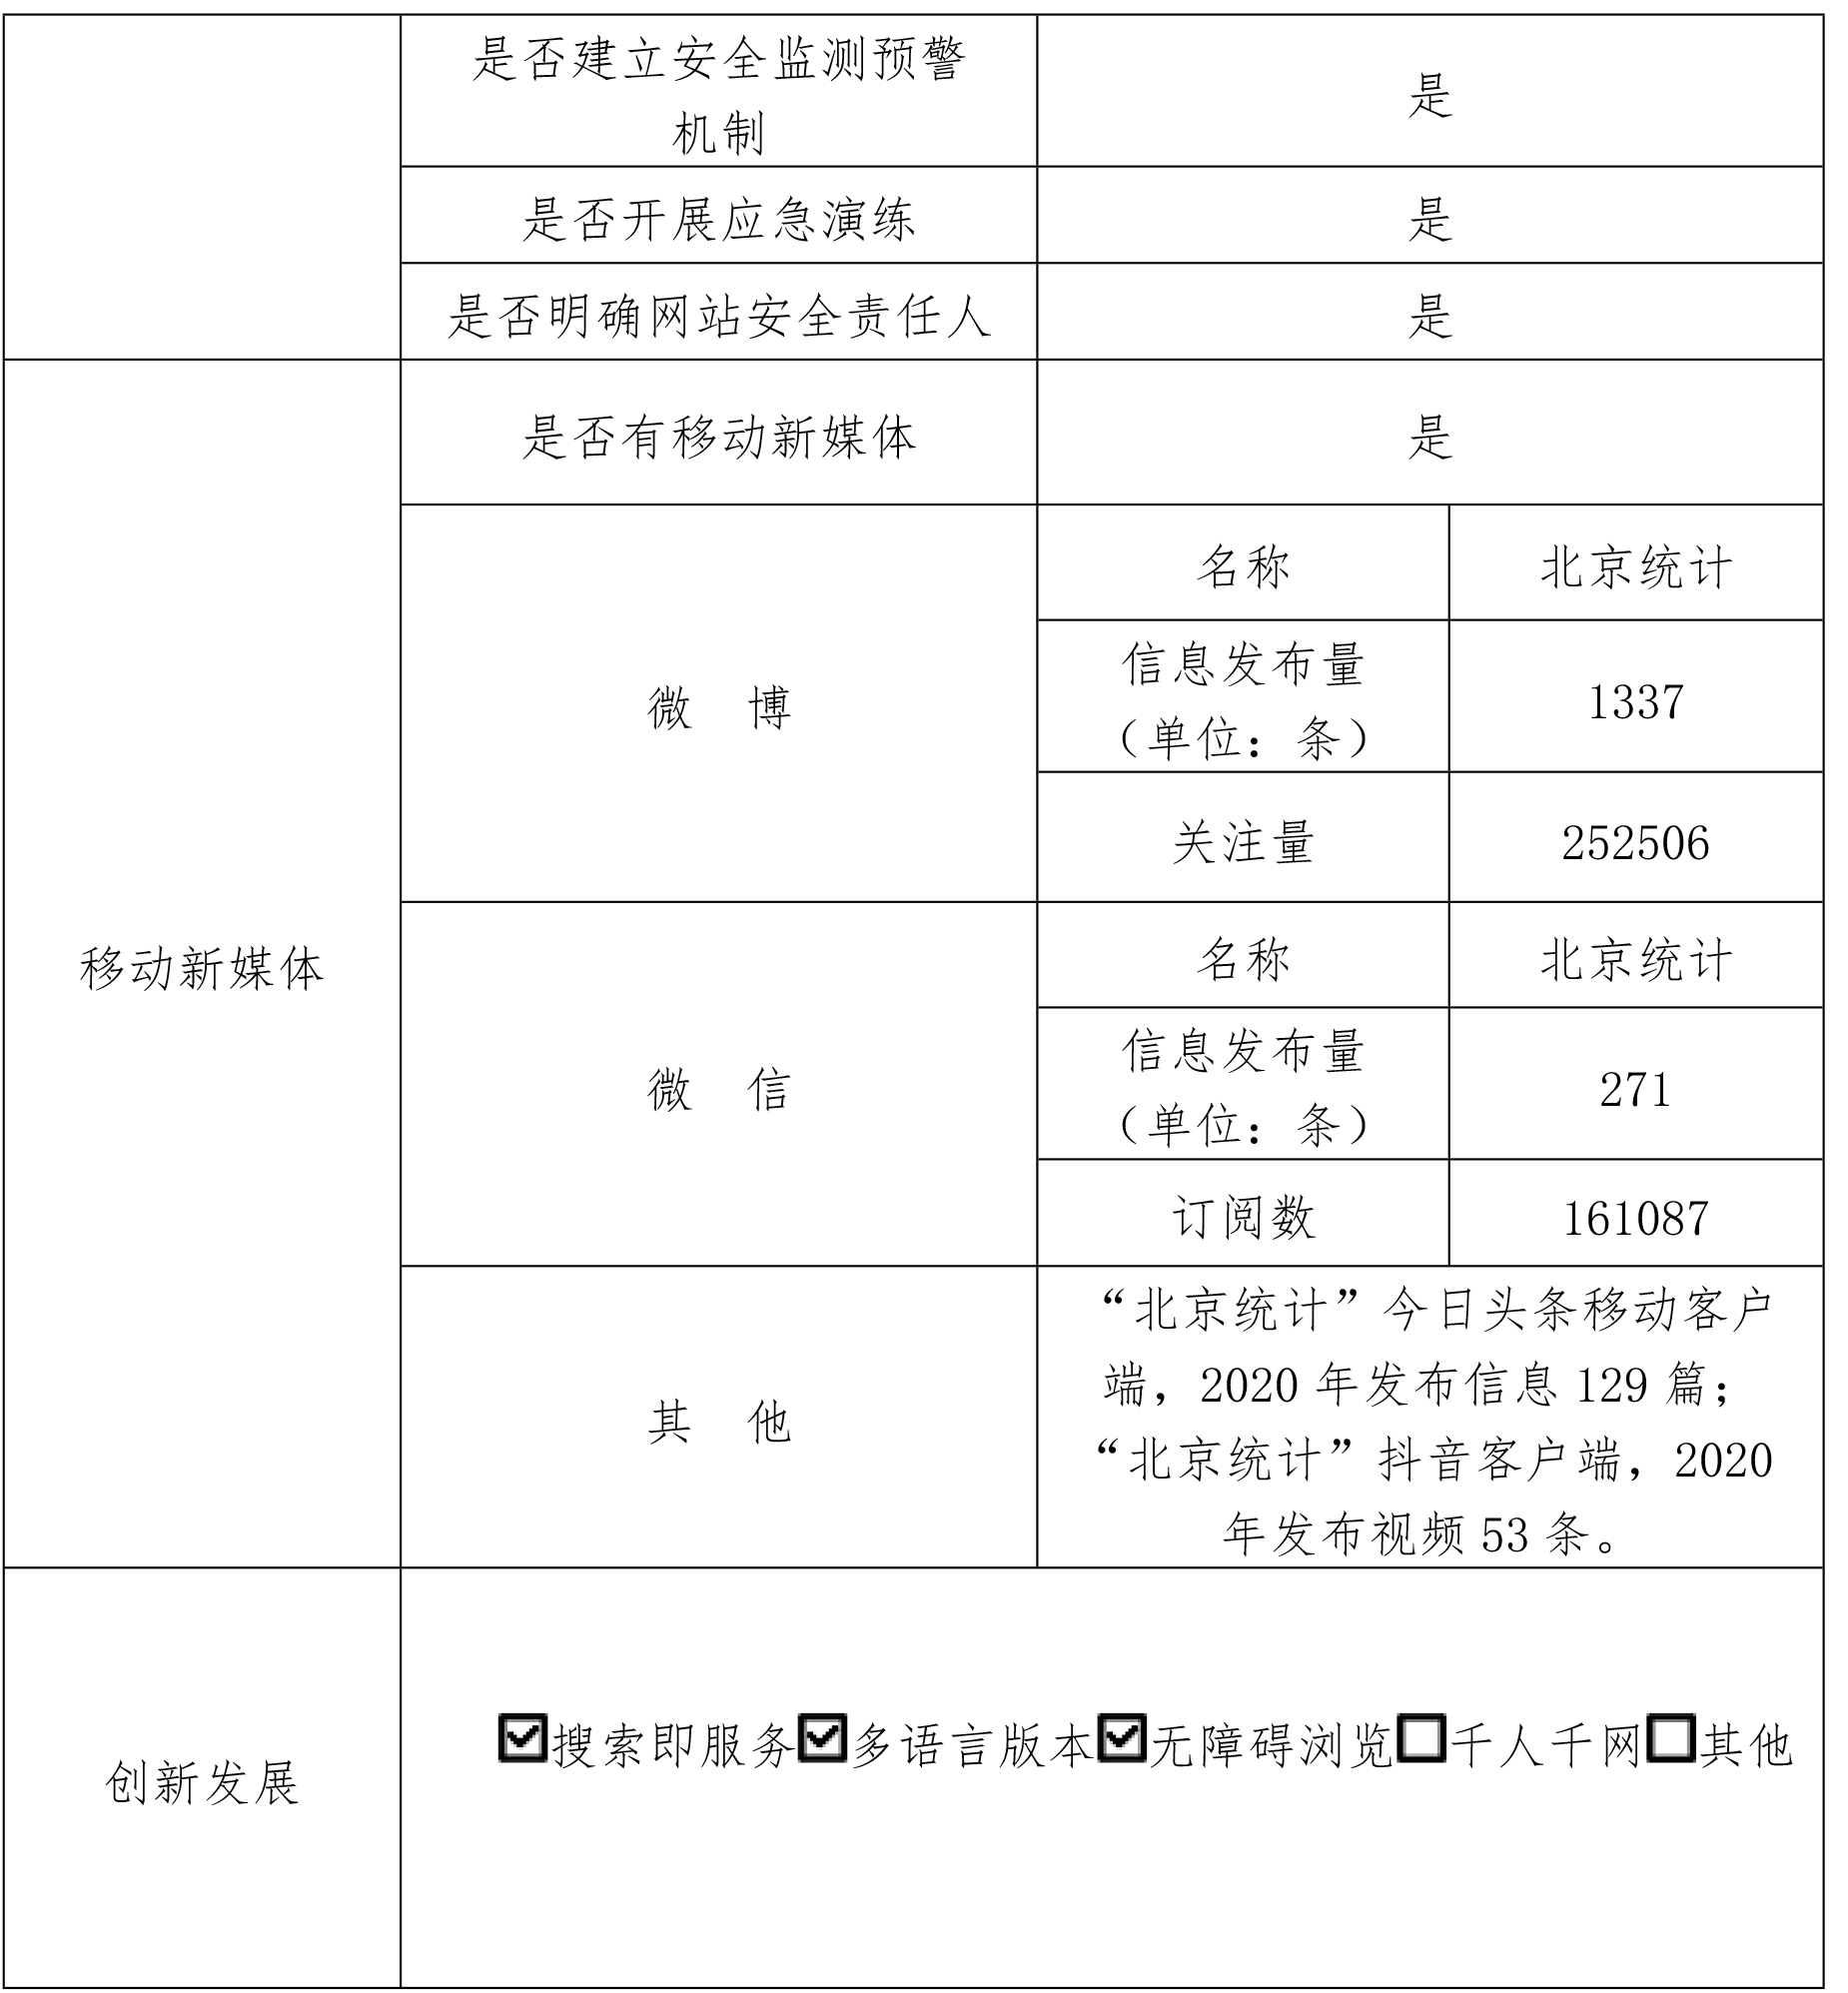 北京市统计局2020年政府网站年度工作报表